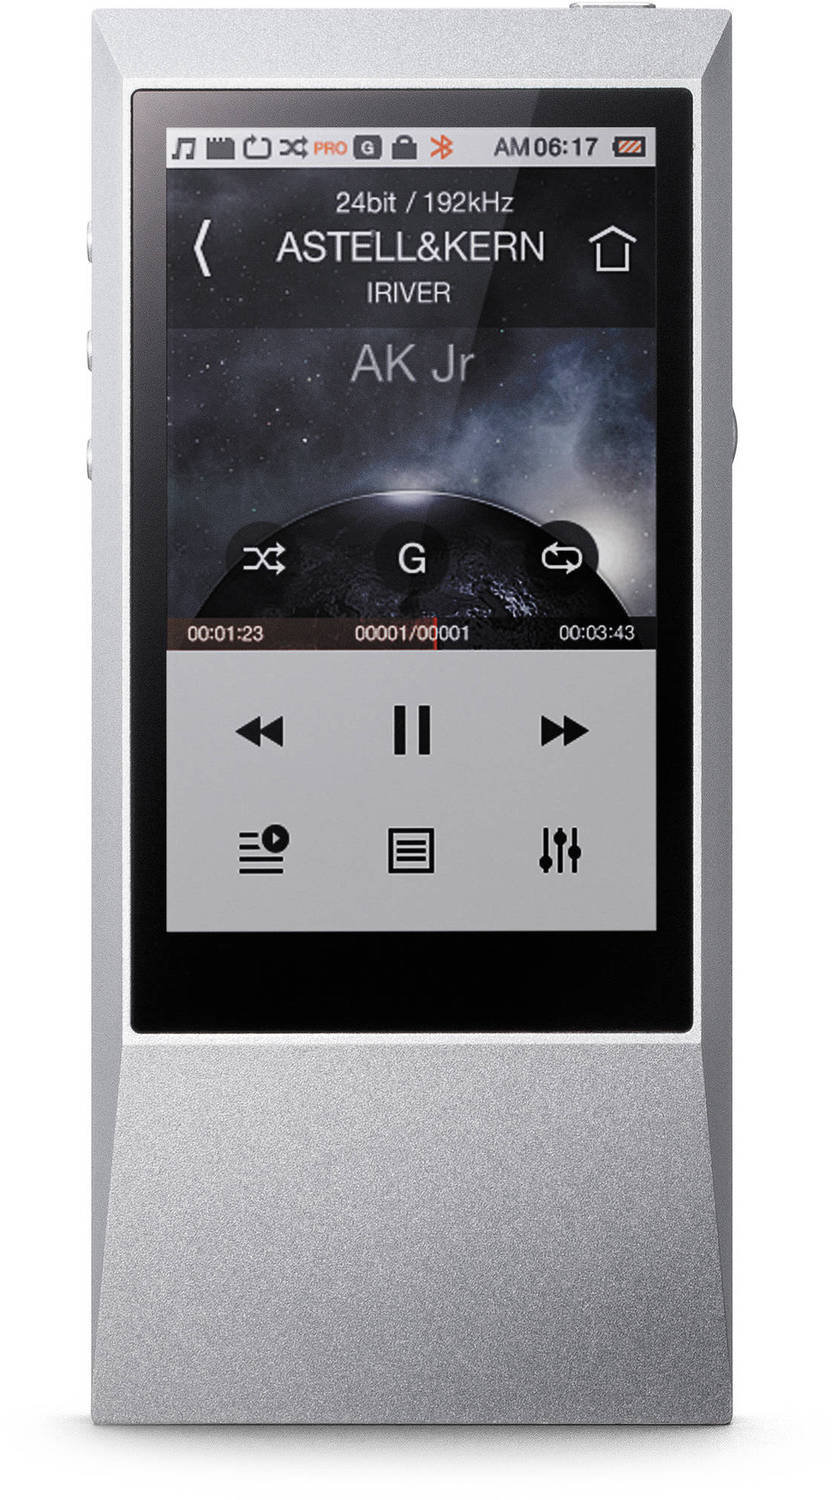 Portable Music Player Astell&Kern AK Jr